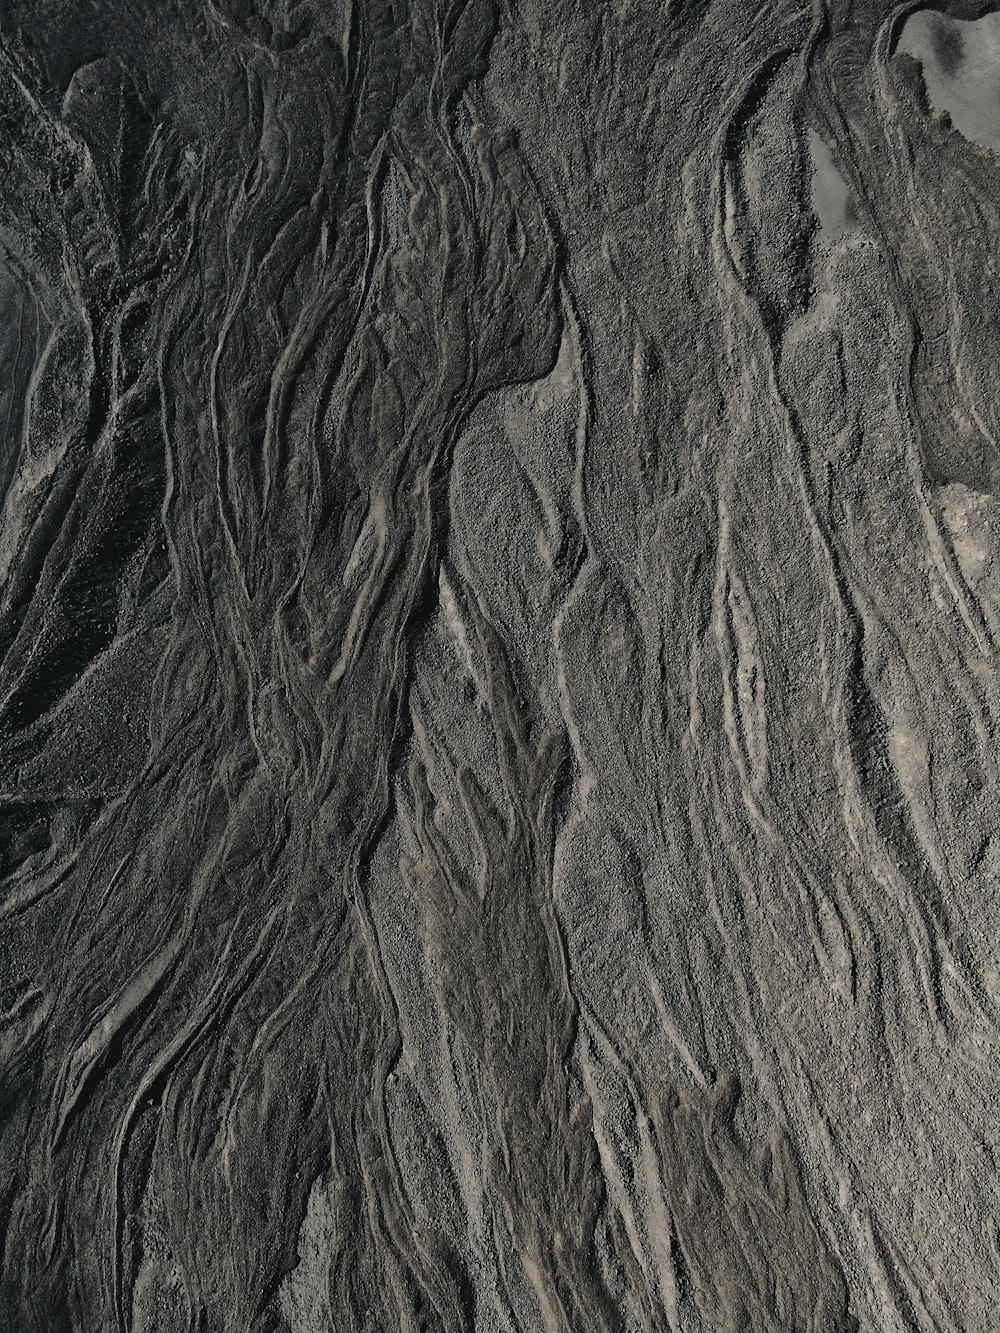 Formación rocosa marrón y negra